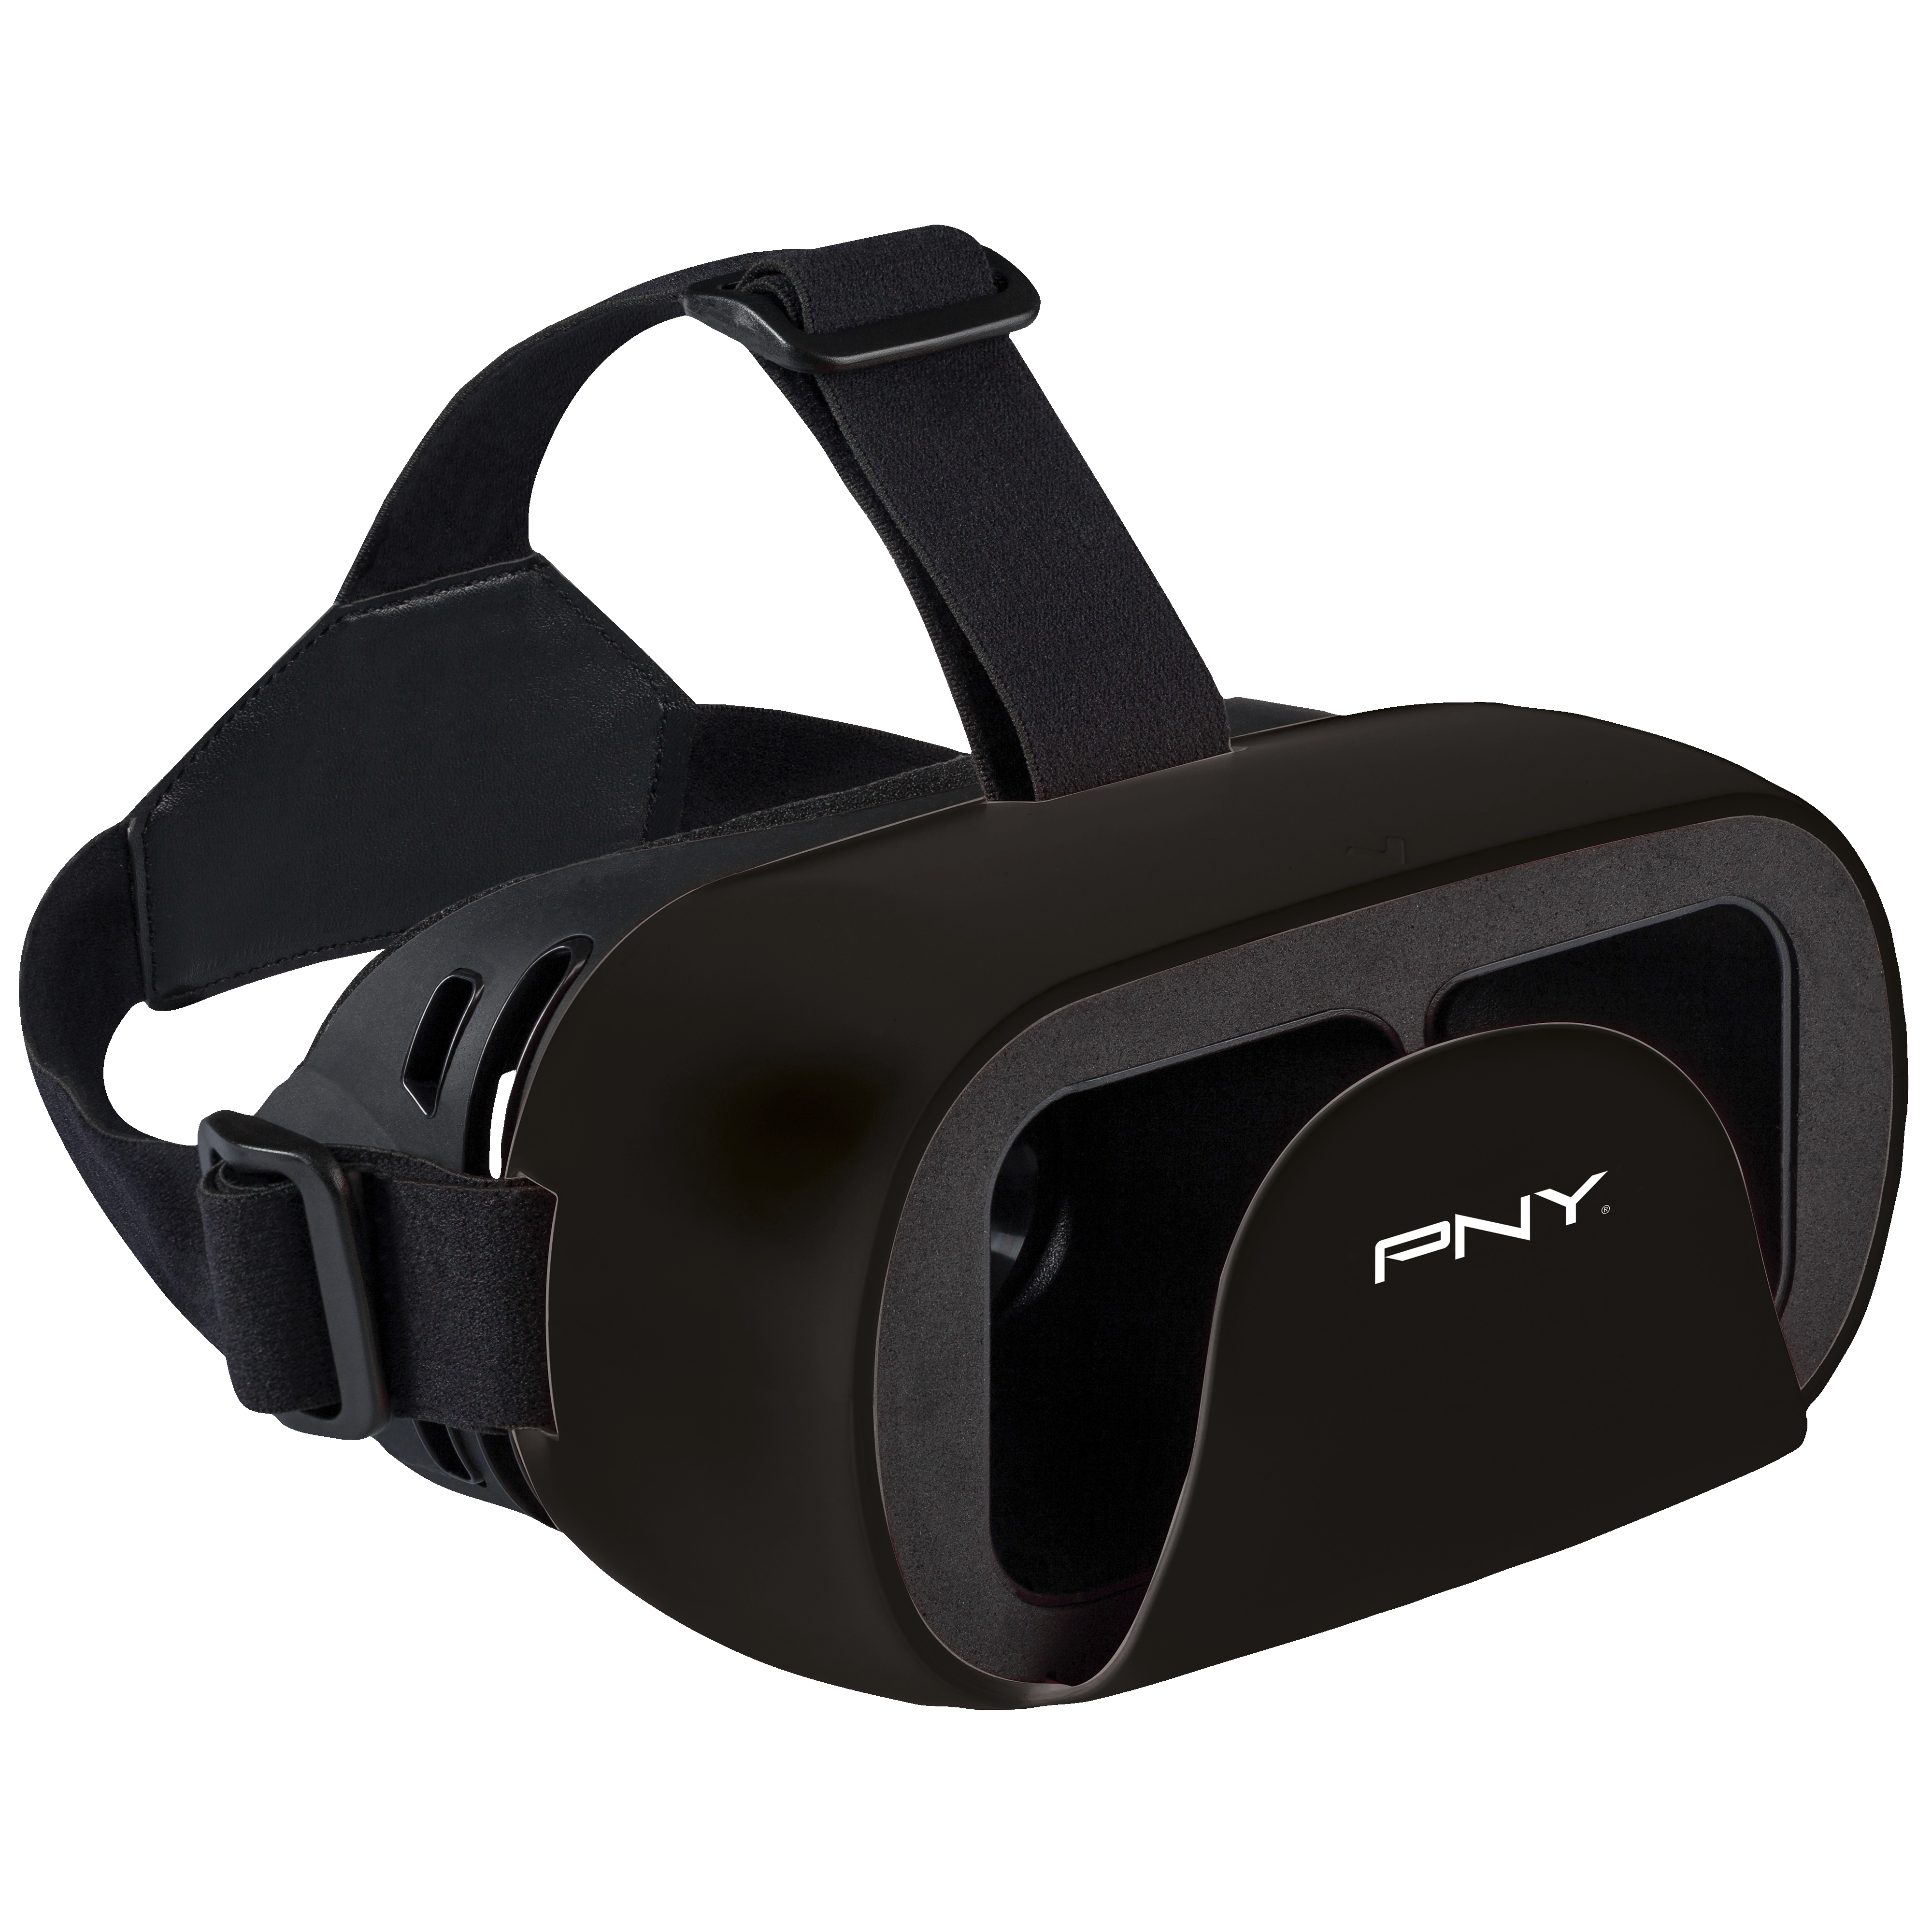 PNY DiscoVRy VR briller - VR gaming - Elkjøp